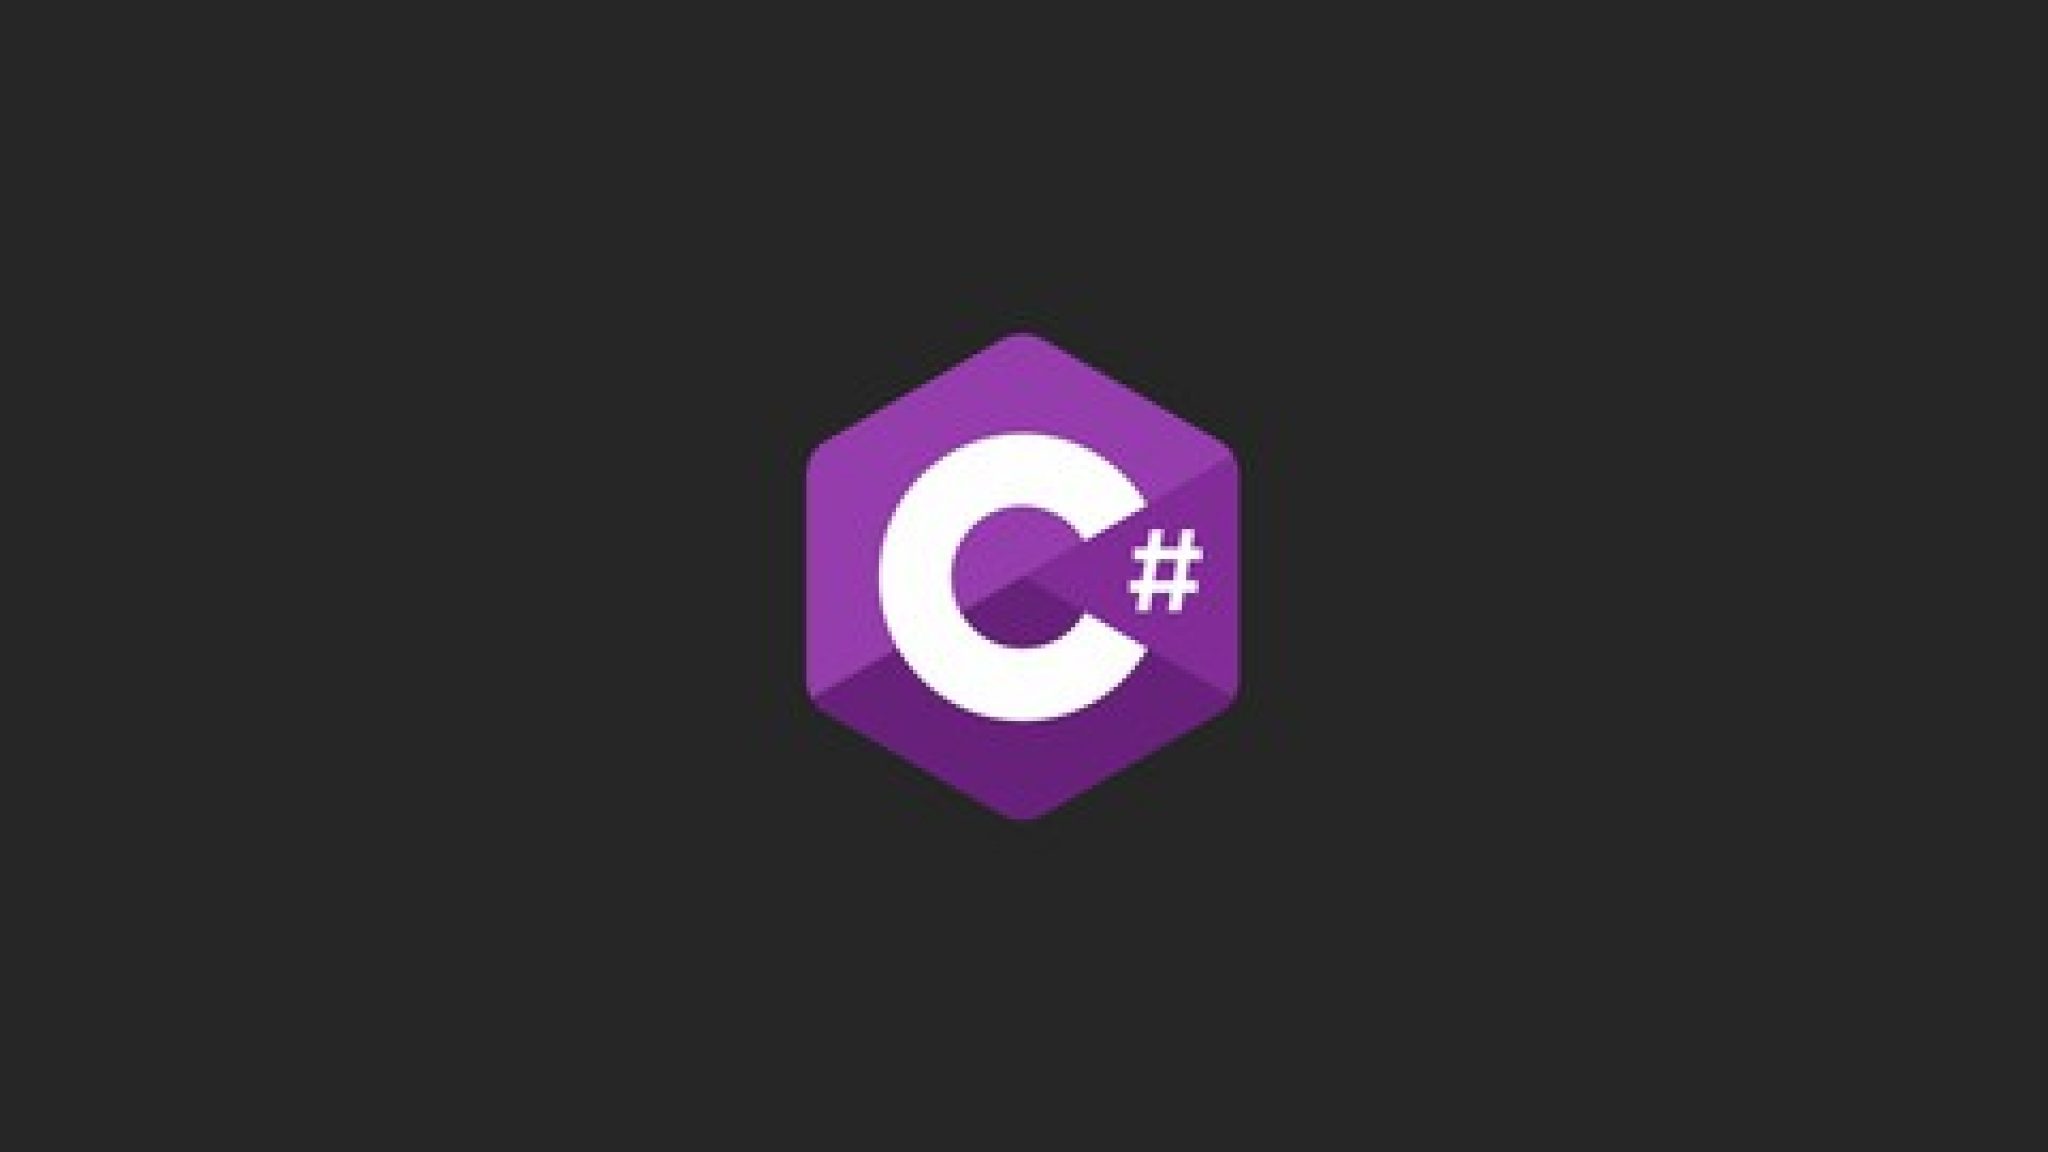 C y com. C# logo. C#.